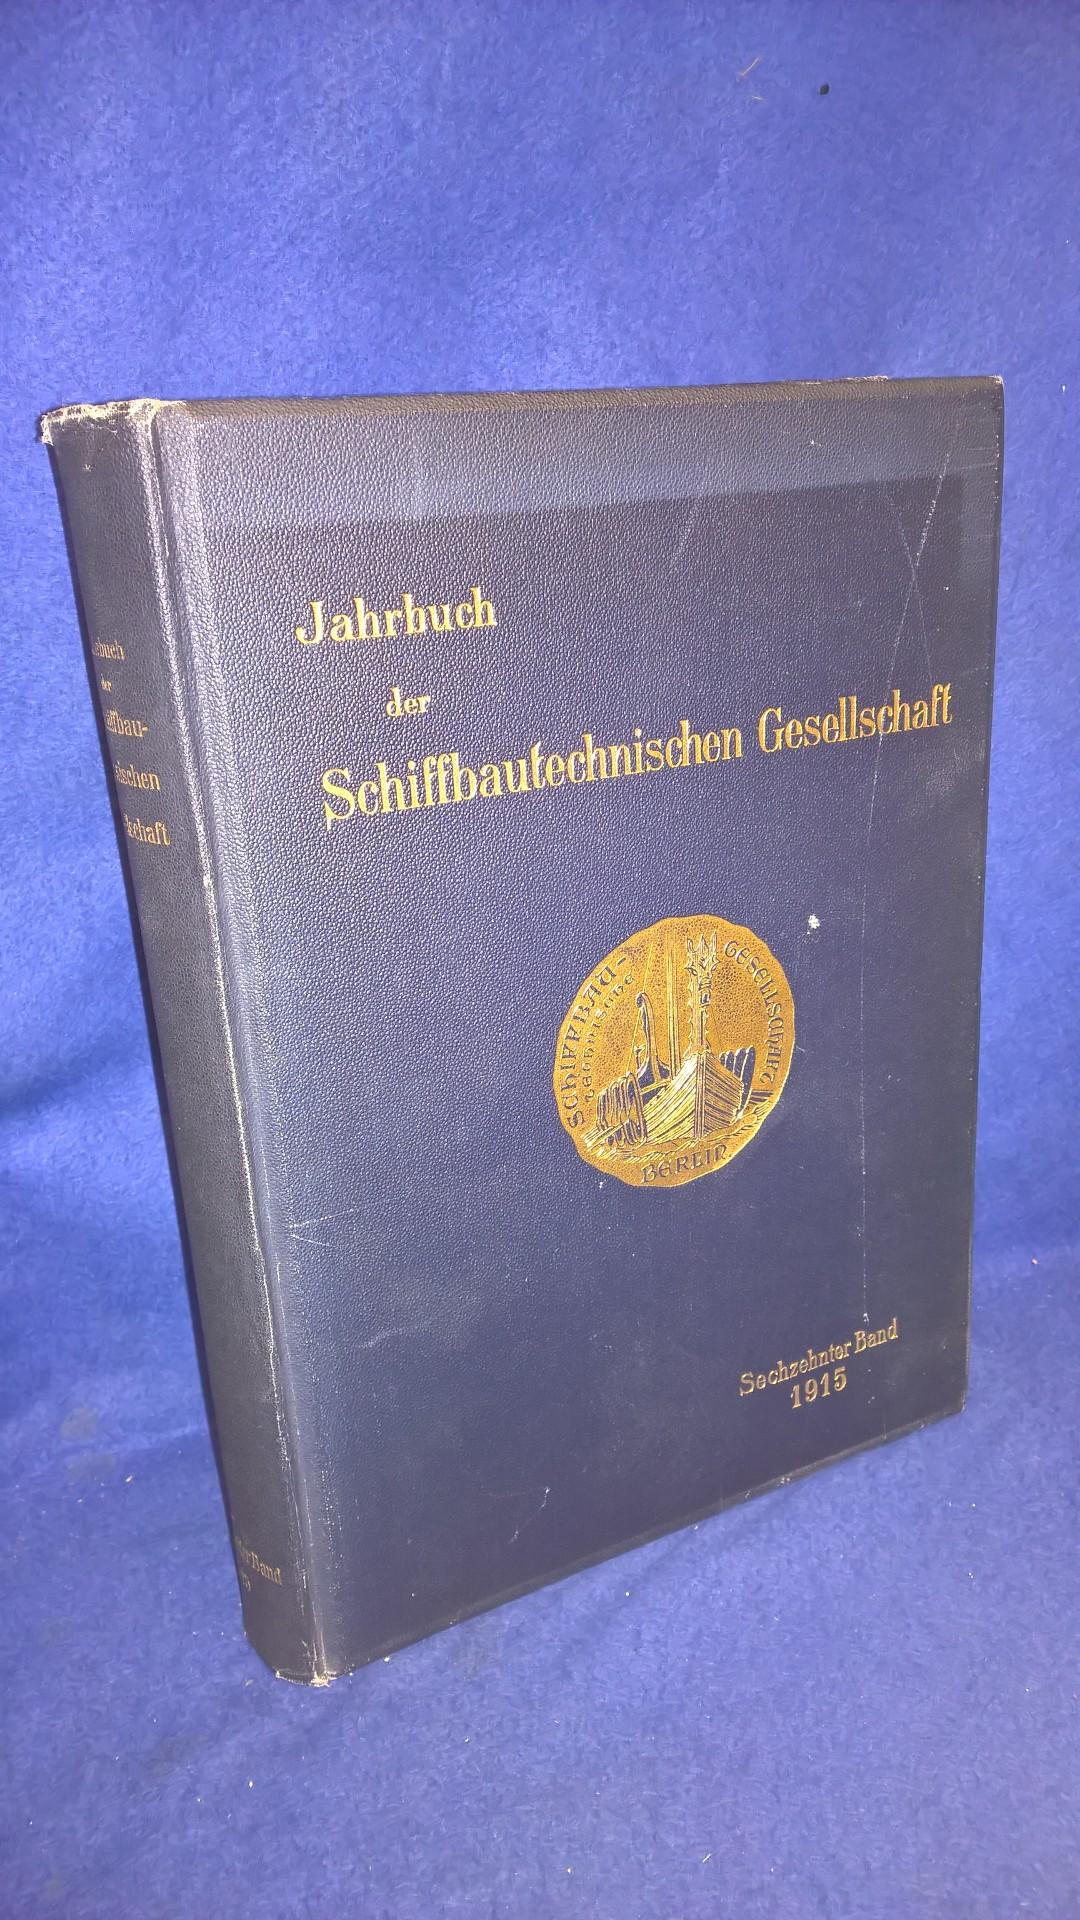 Jahrbuch der Schiffsbautechnischen Gesellschaft. Kompletter Jahrgang 1915. Aus dem Inhalt: Schiffskanone und Schiffspanzer/ Über Zepellin-Luftschiffe/ Versuche mit Einsatzmaterial sowie weitere Aufsätze.